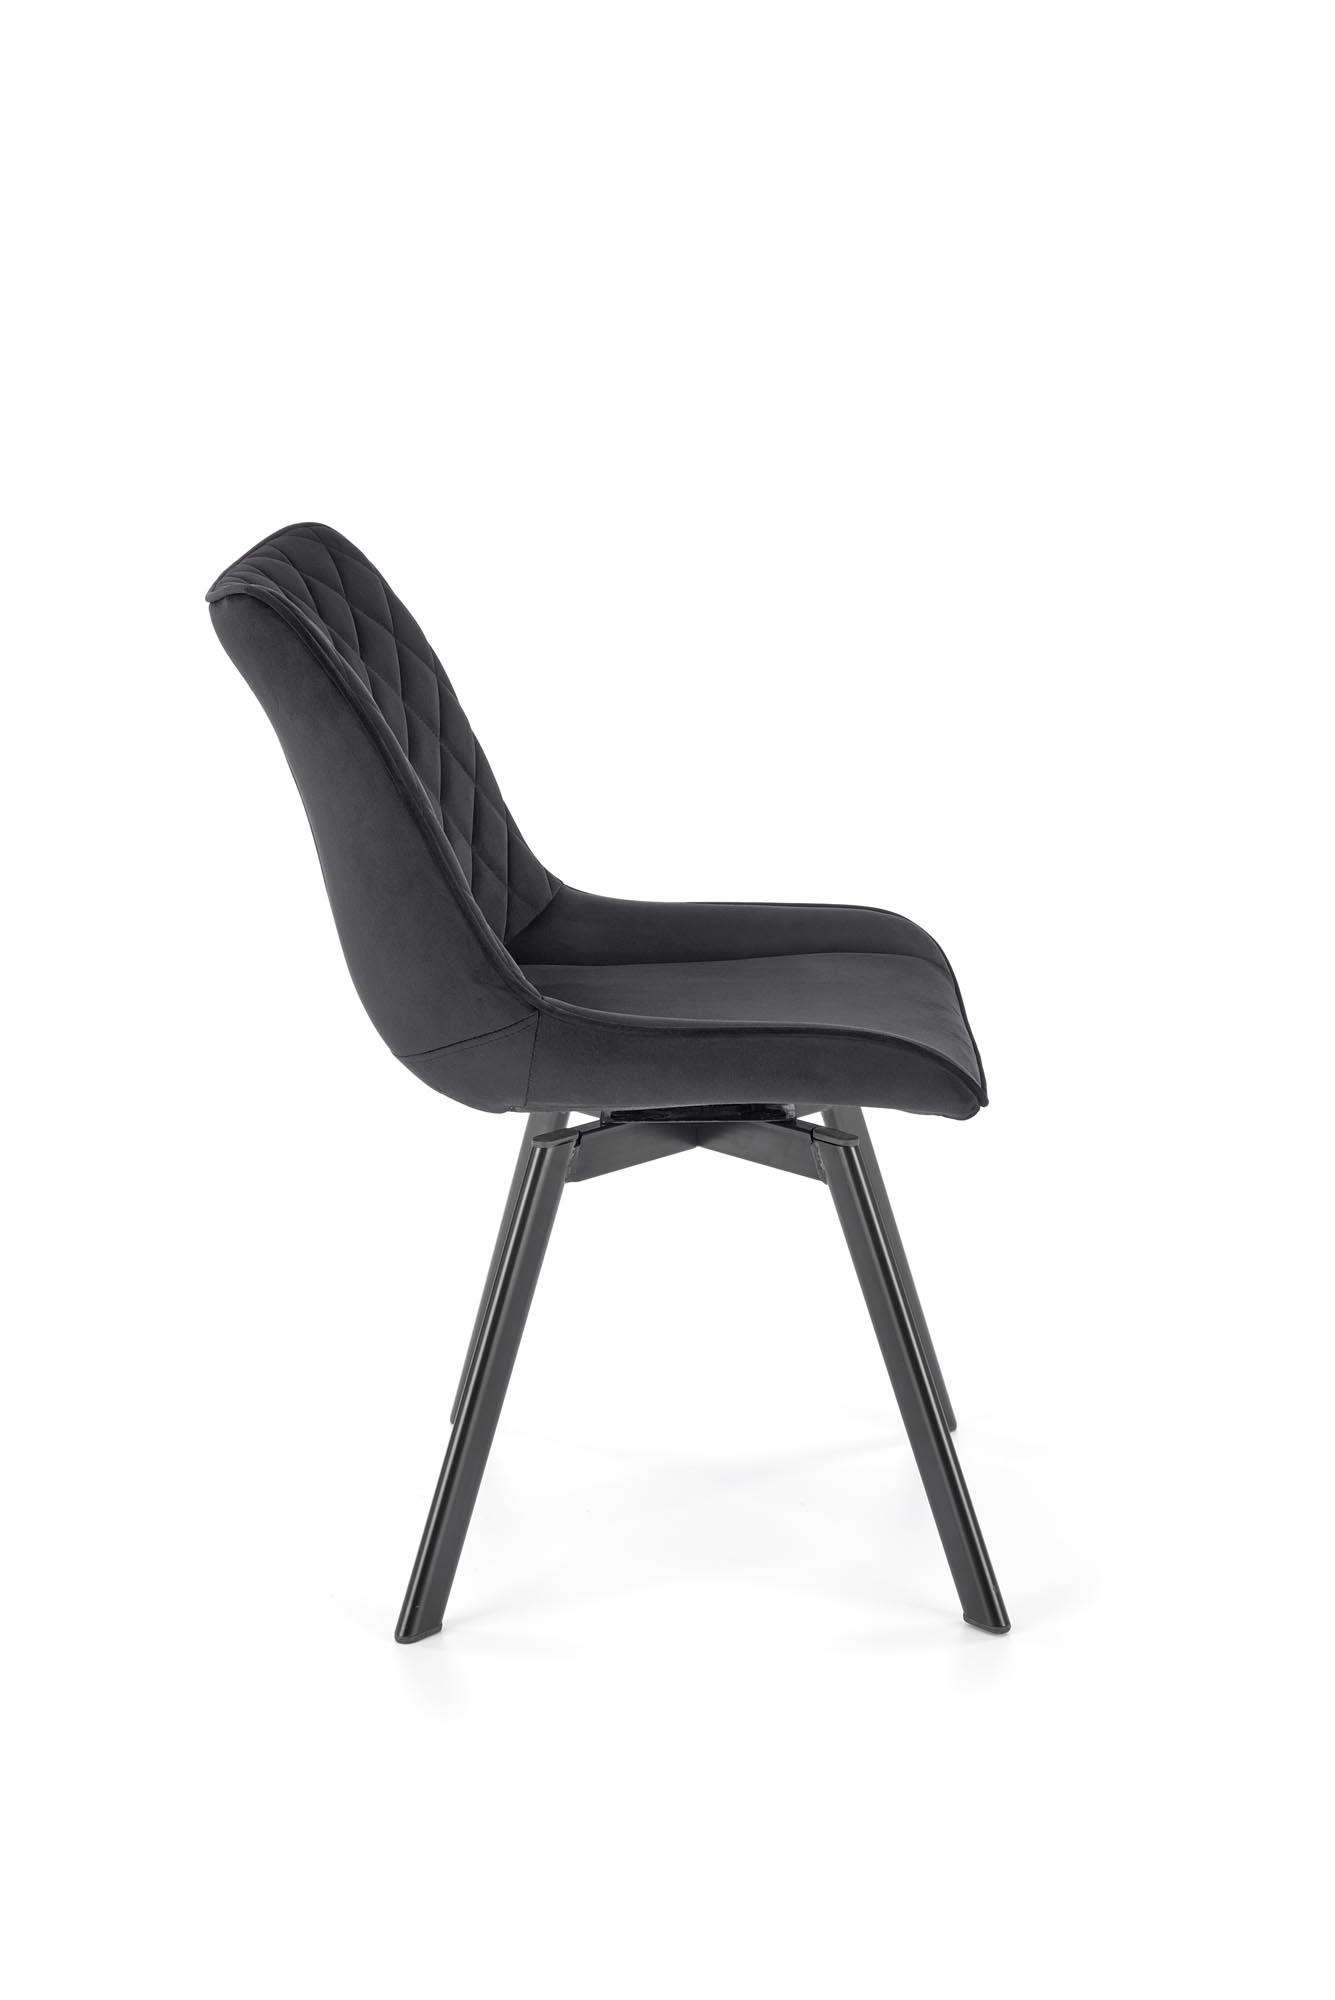 K520 Židle Nohy - černé, Sedák - Černý (1p=2szt) židle čalouněné k520 - Černý